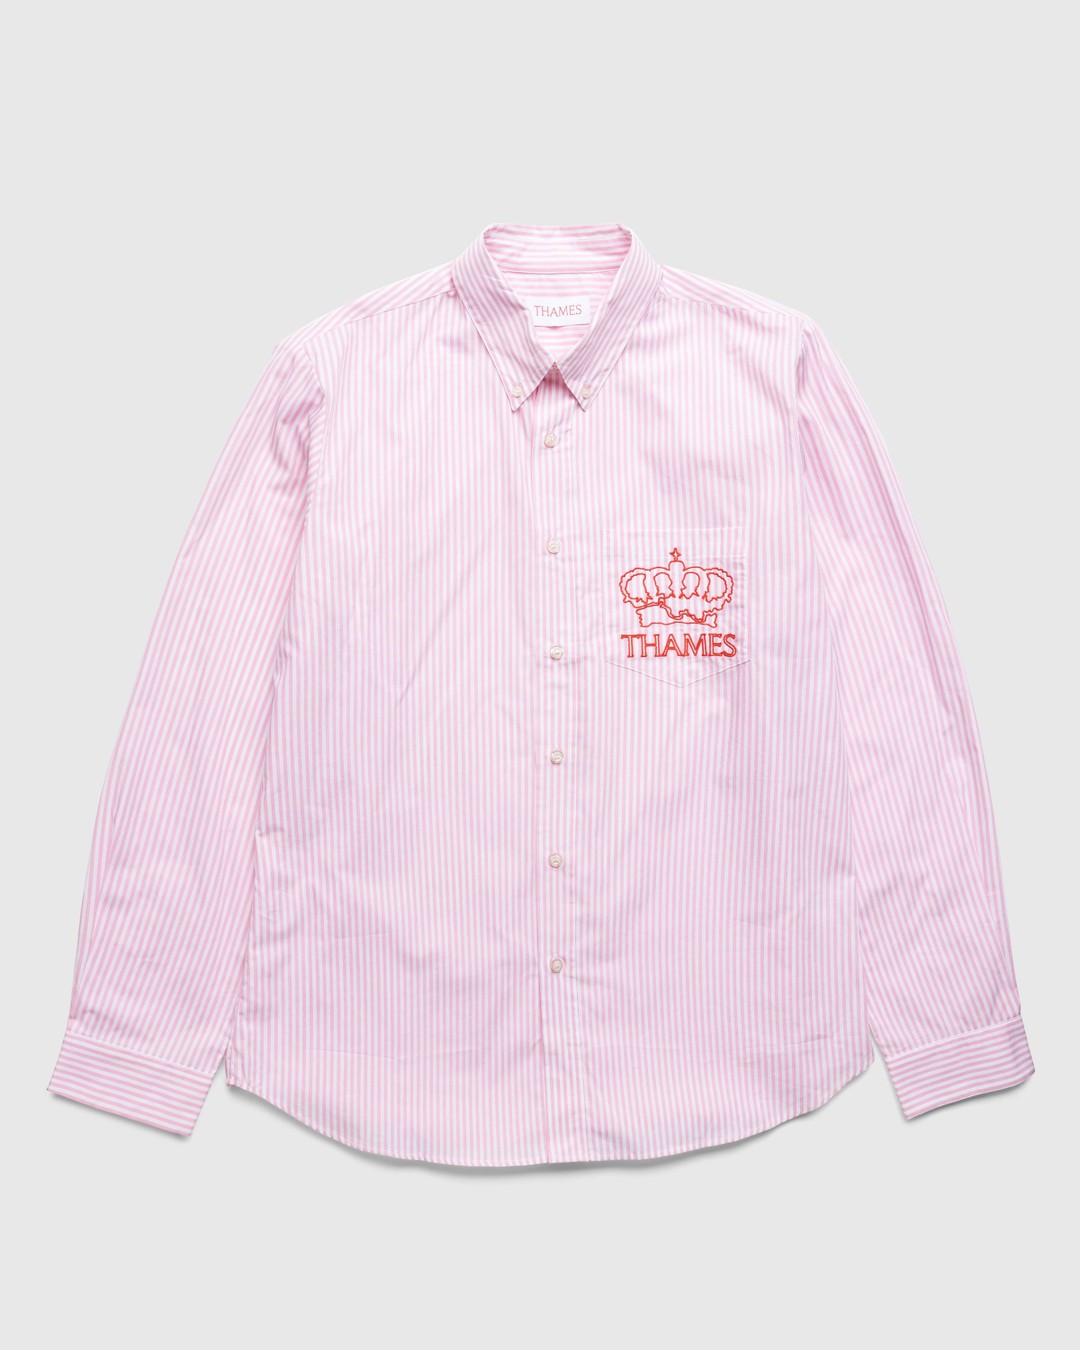 THAMES MMXX. – P.G. Valentine Pink | Highsnobiety Shop